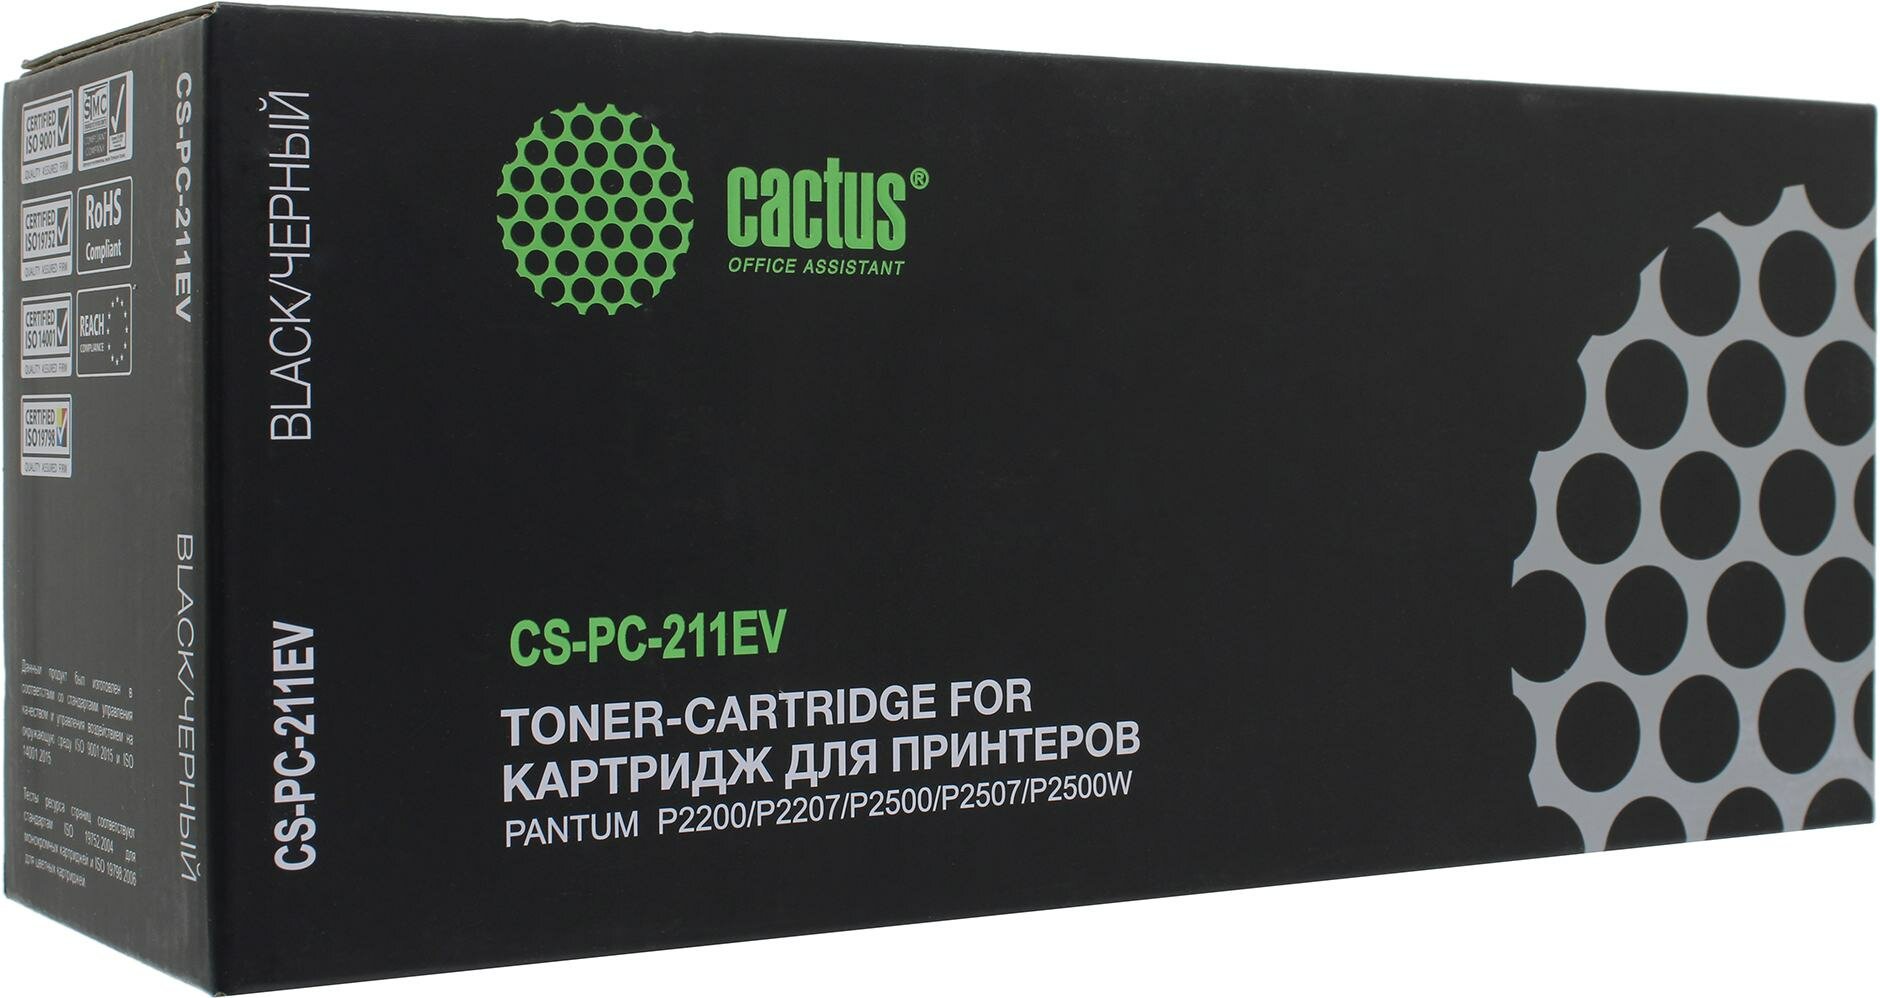 Картридж cactus CS-PC-211EV, 1600 стр, черный